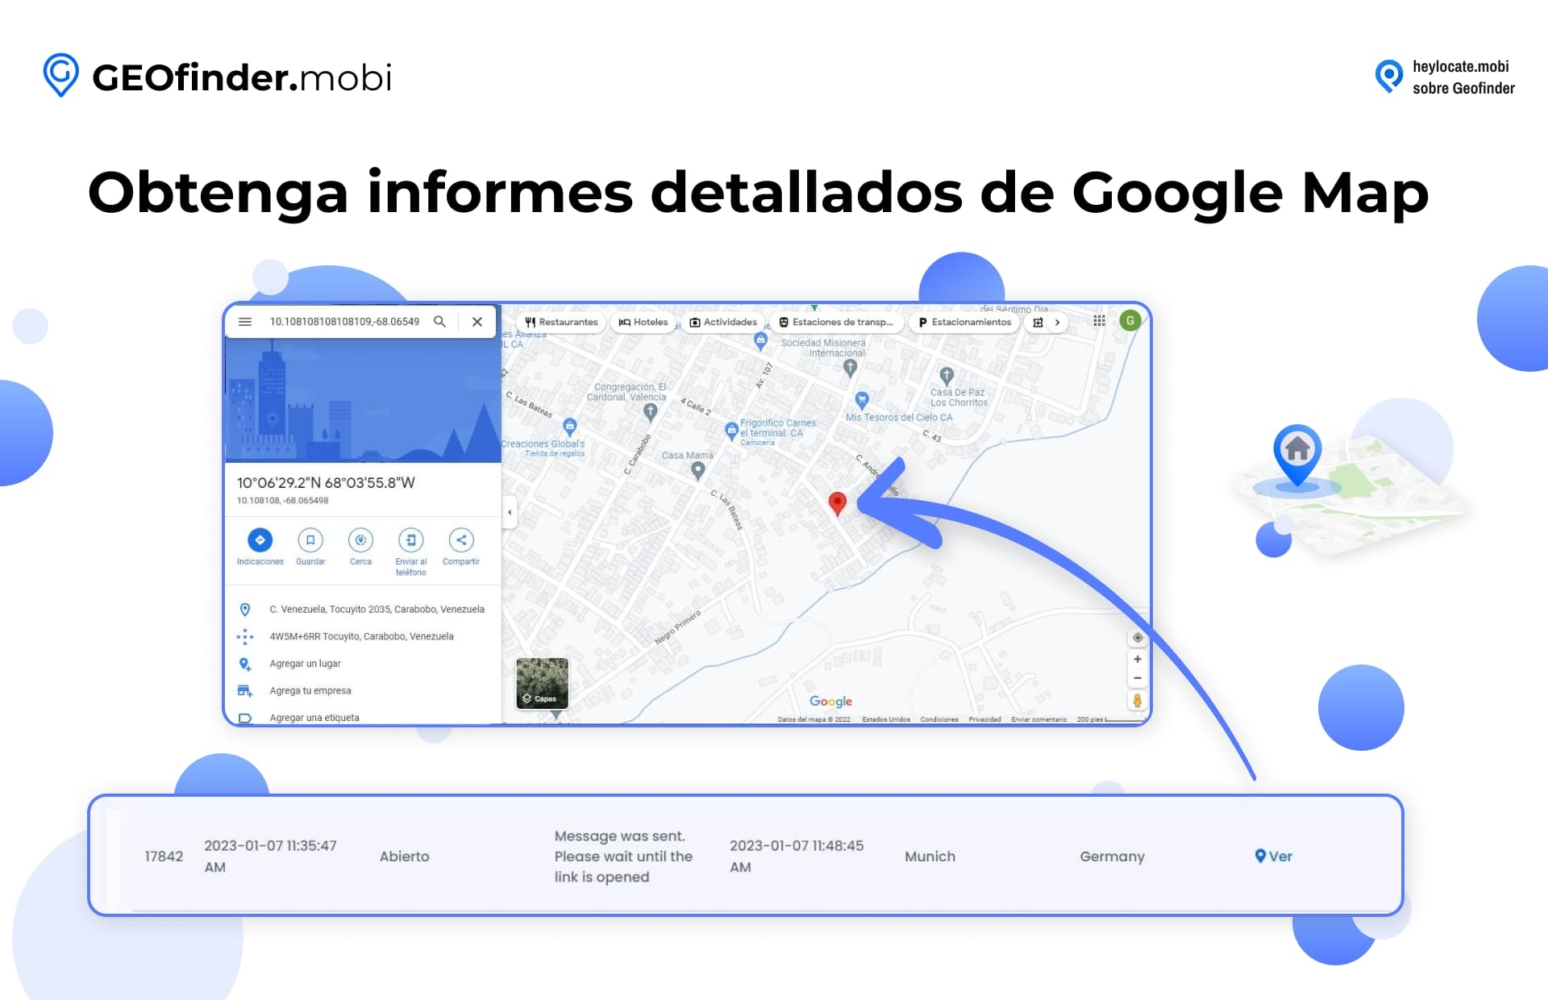 Visualización de la función de GEOfinder.mobi para obtener informes detallados de Google Maps, mostrando un mapa y las coordenadas de ubicación, junto con una vista detallada de un mapa que resalta un área específica con un marcador de ubicación.